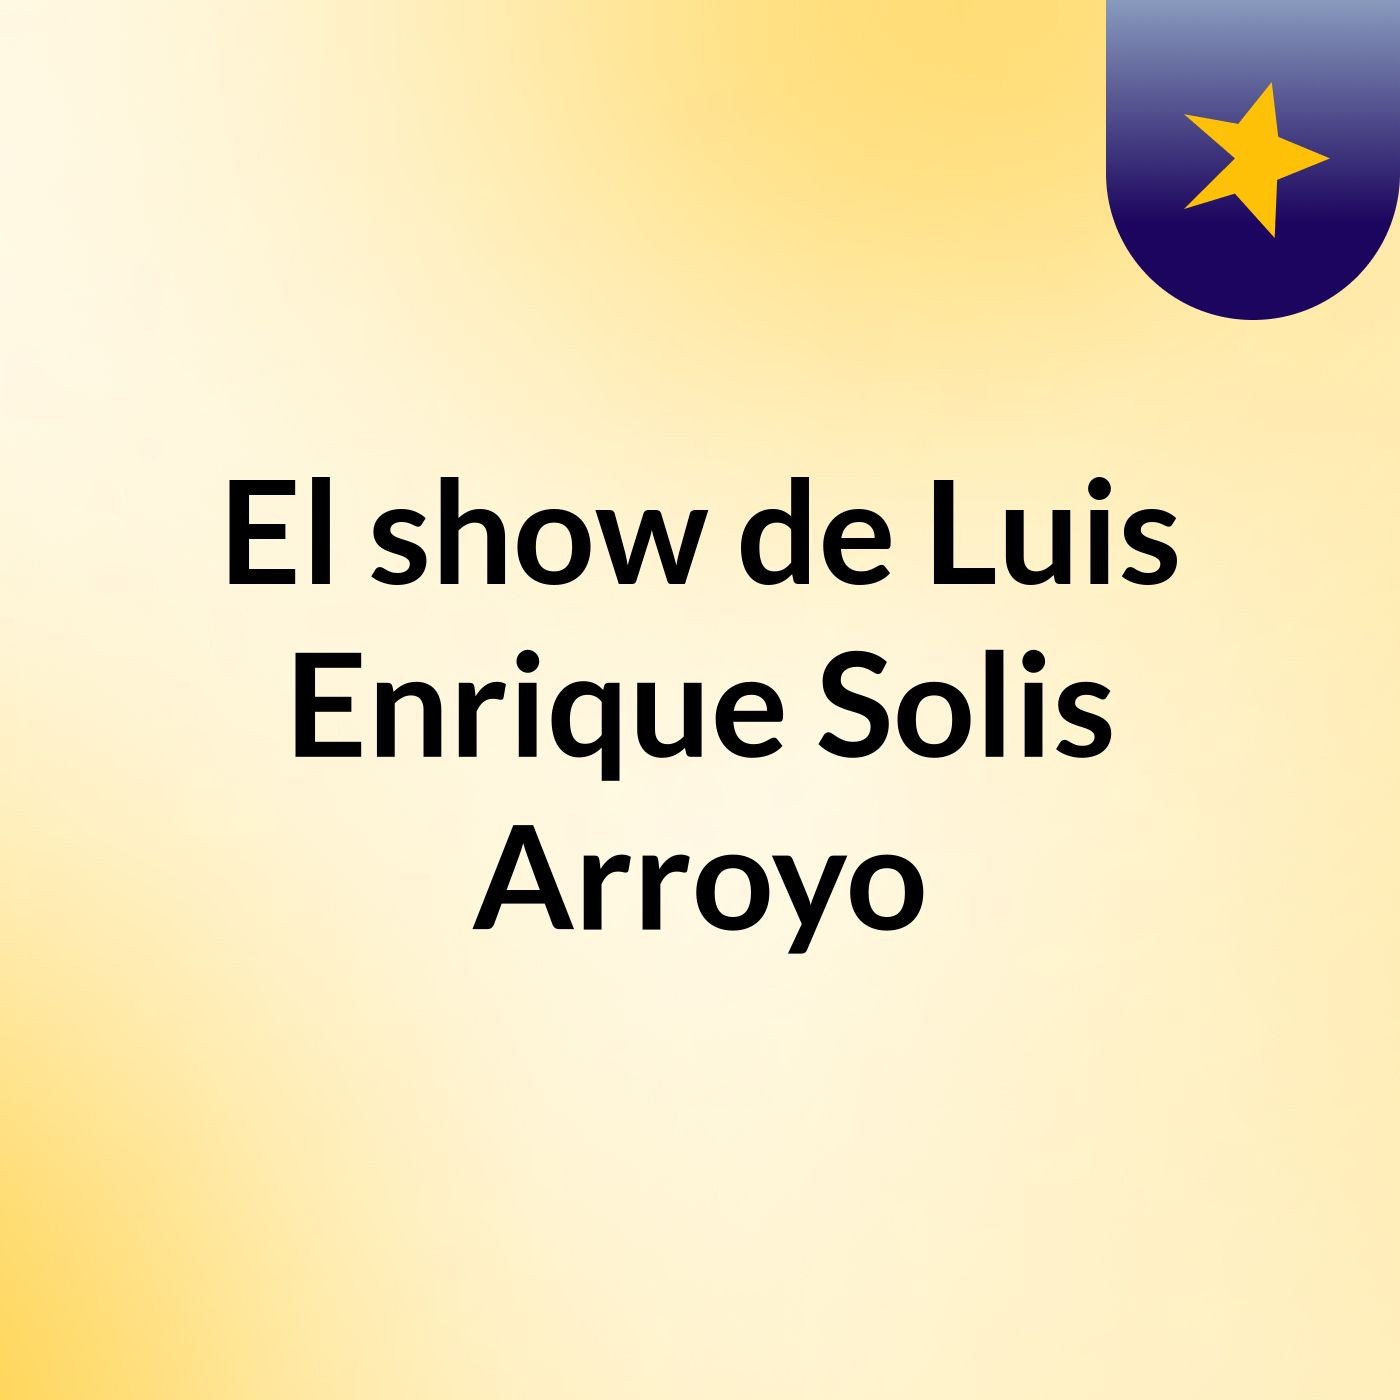 El show de Luis Enrique Solis Arroyo